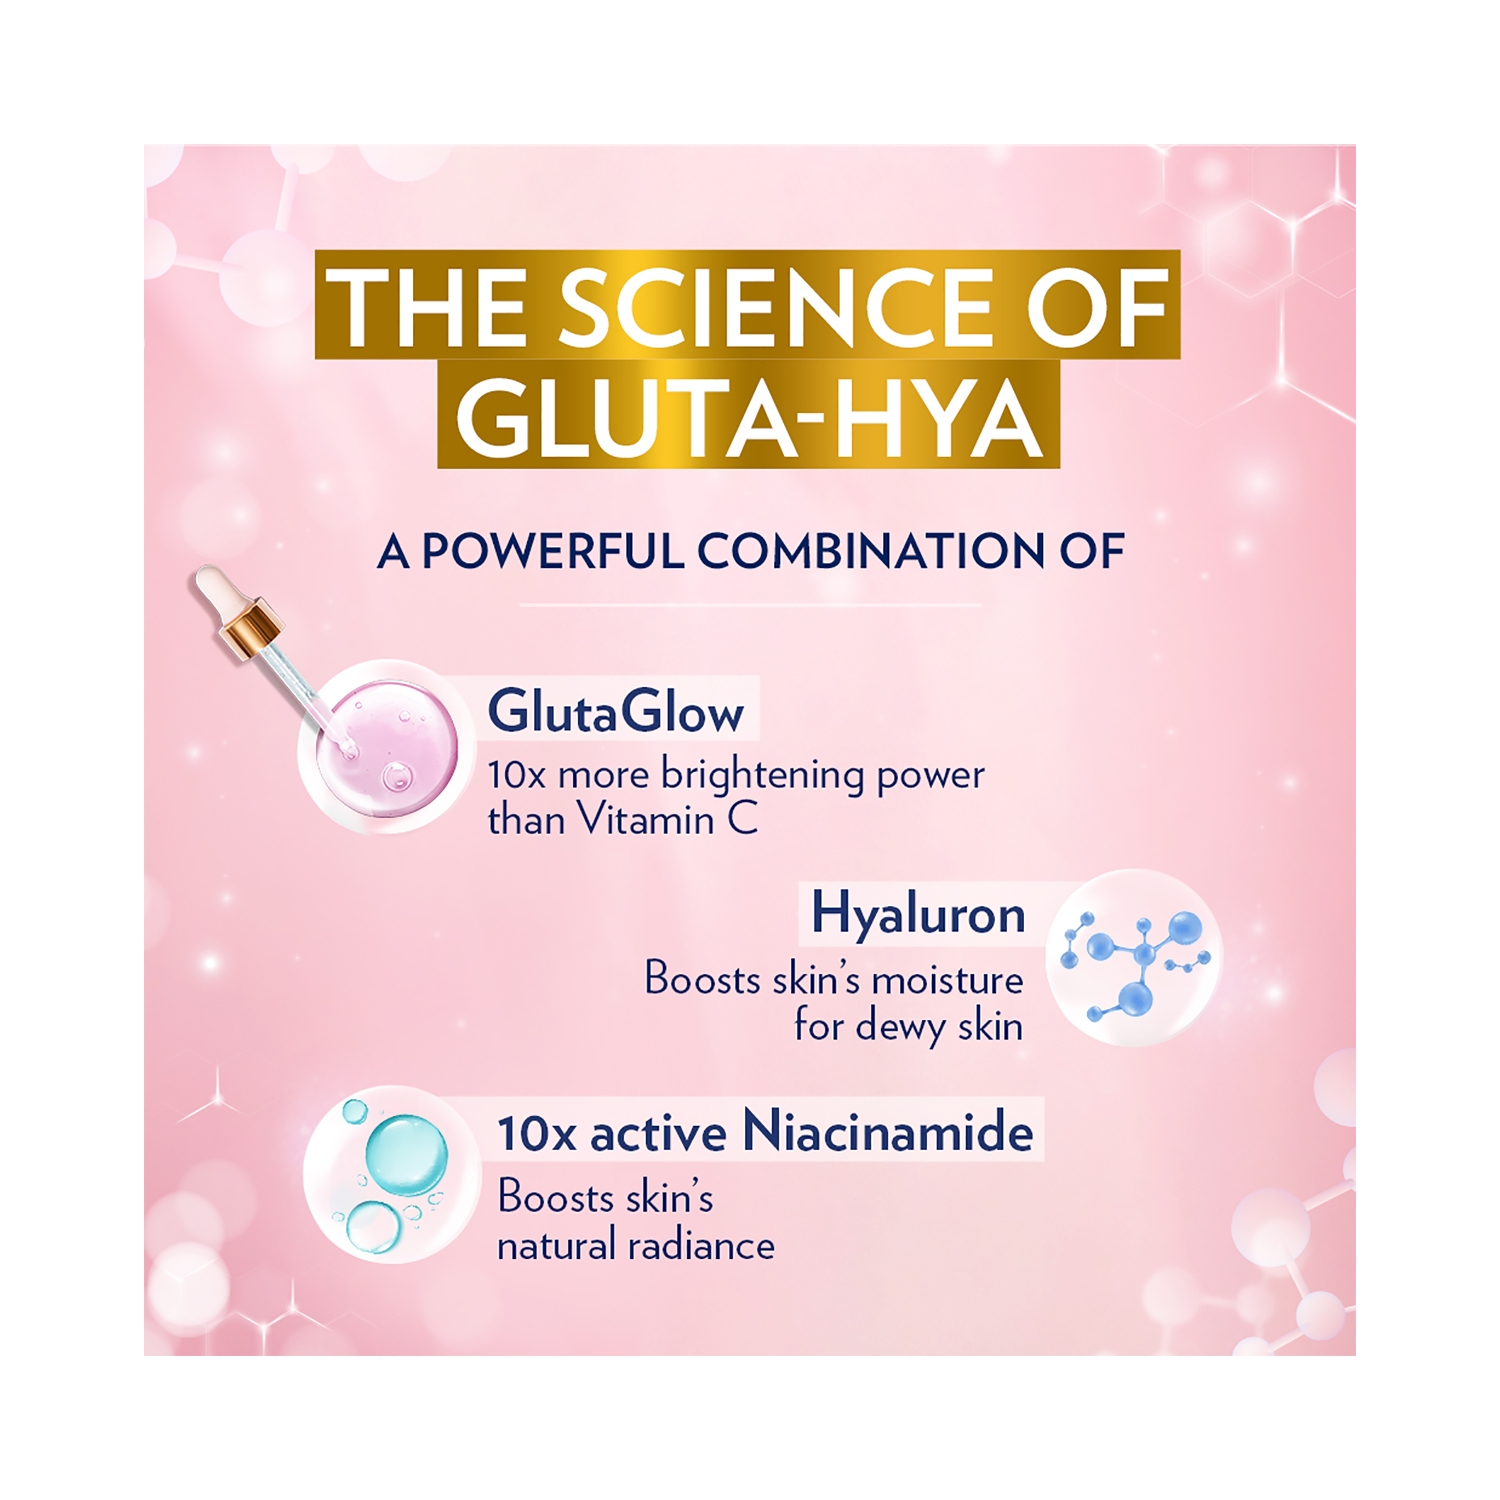 Buy Vaseline Gluta Hya Dewy Radiance Serum-In-Lotion (200ml) - Vaseline, Tira: Shop Makeup, Skin, Hair & Beauty Products Online